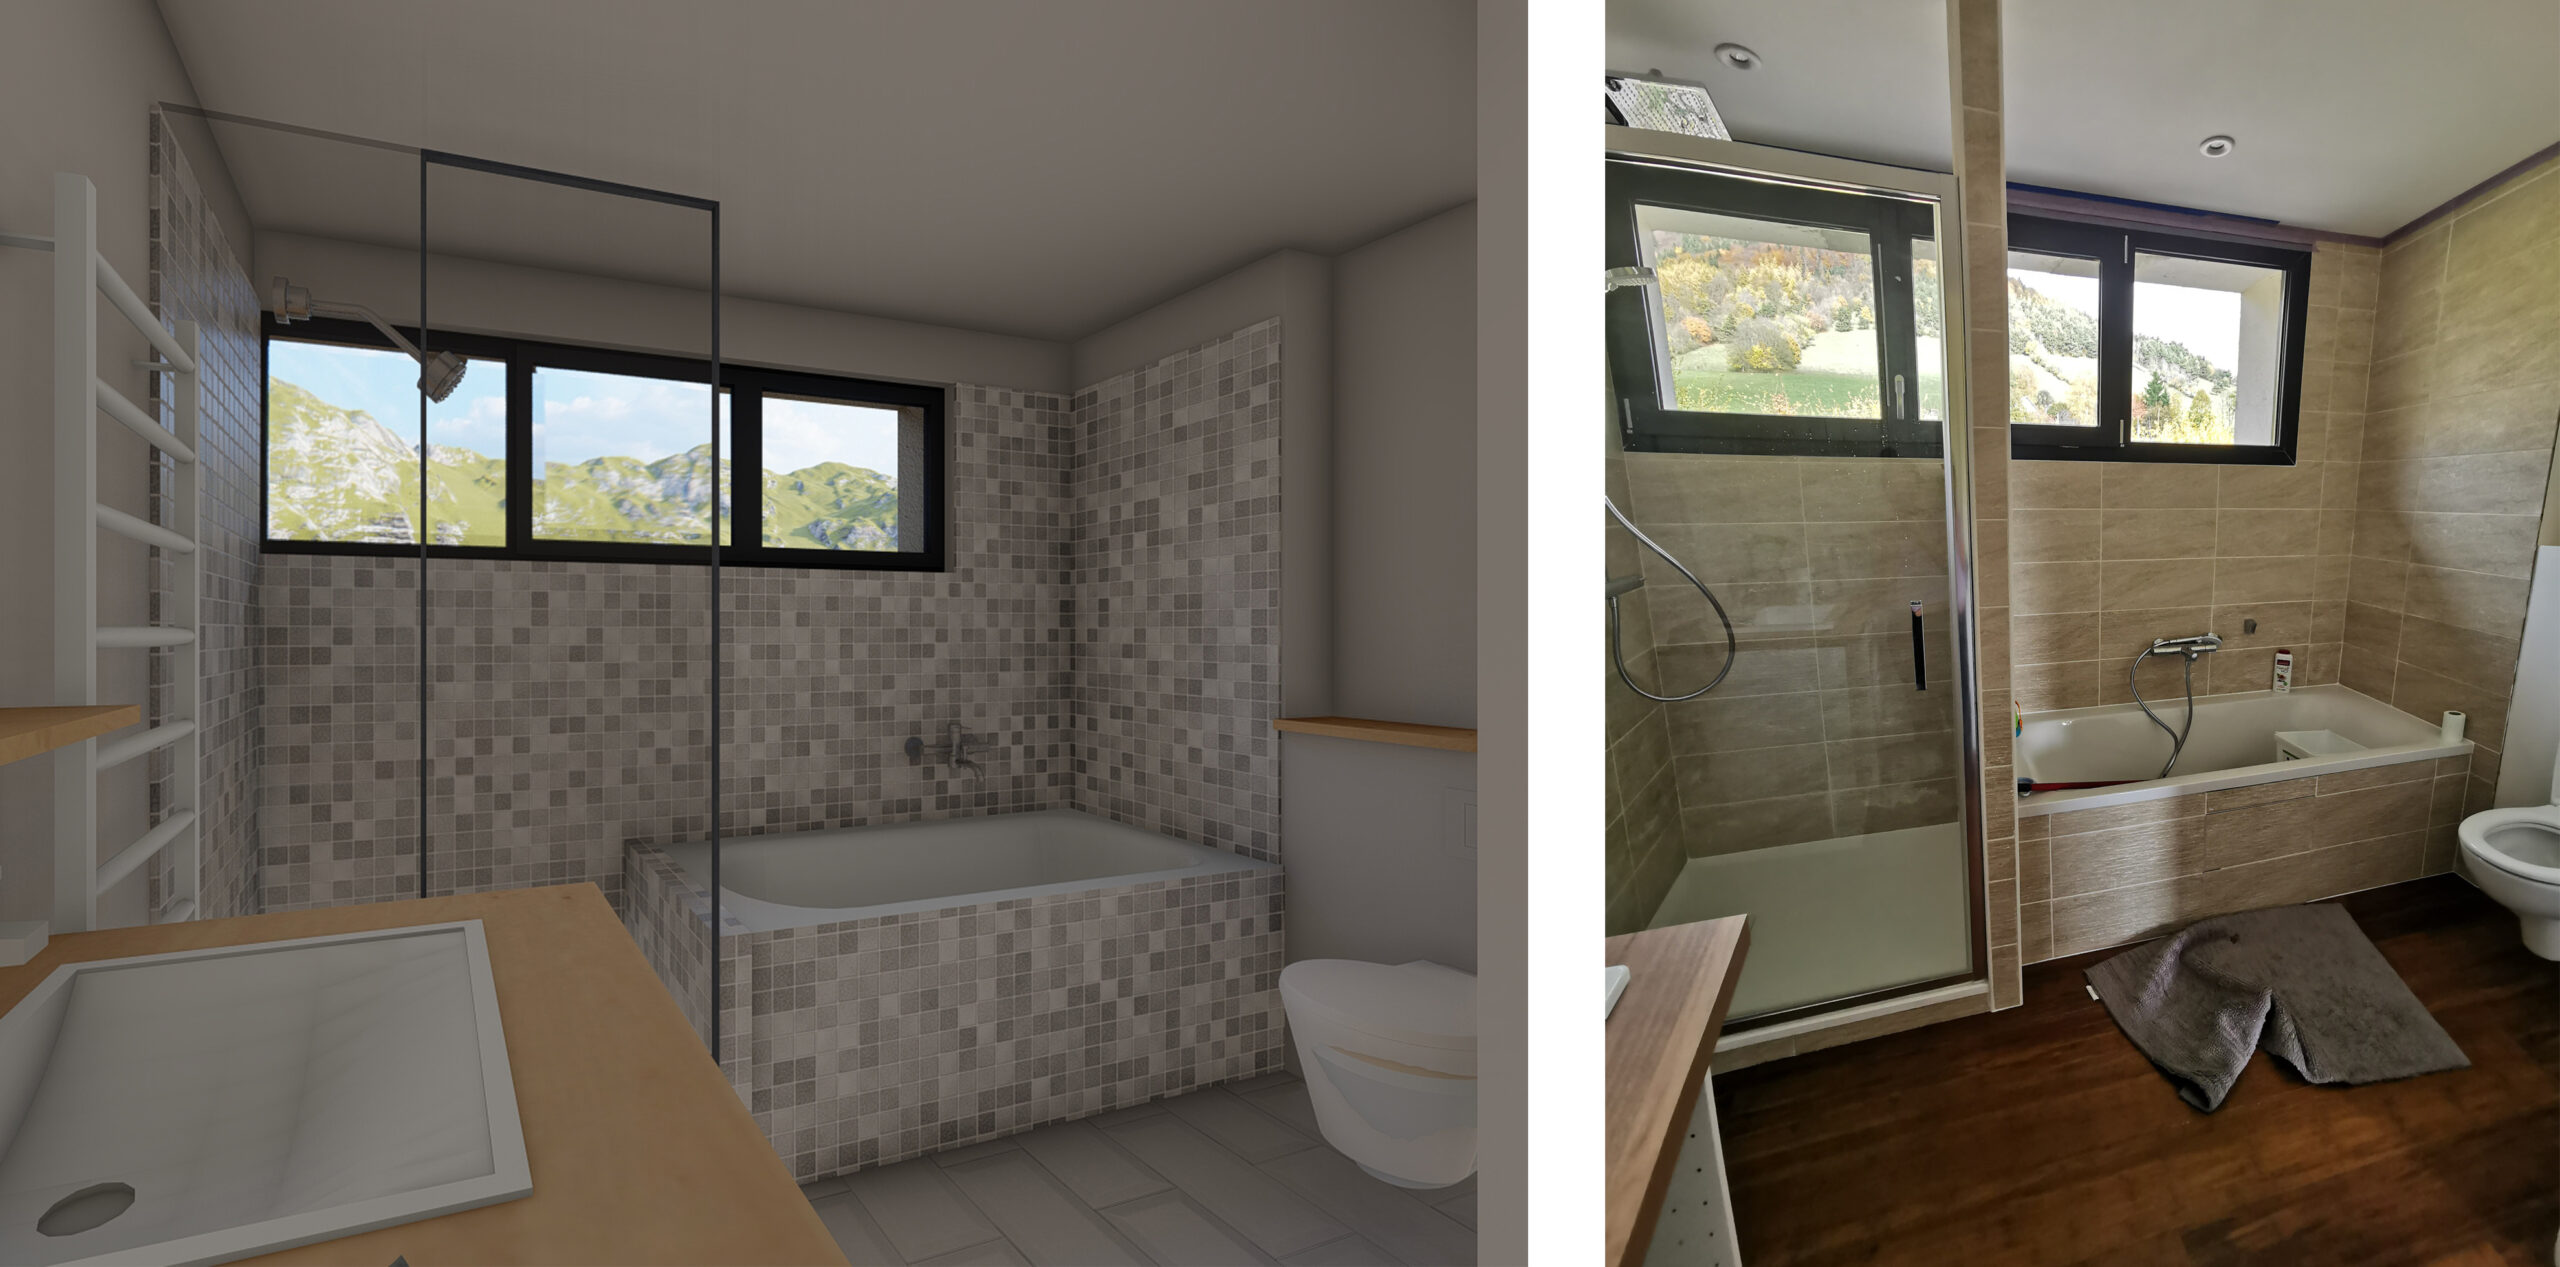 Rénovation de la salle de bains par l'agence d'architecture CLAAP